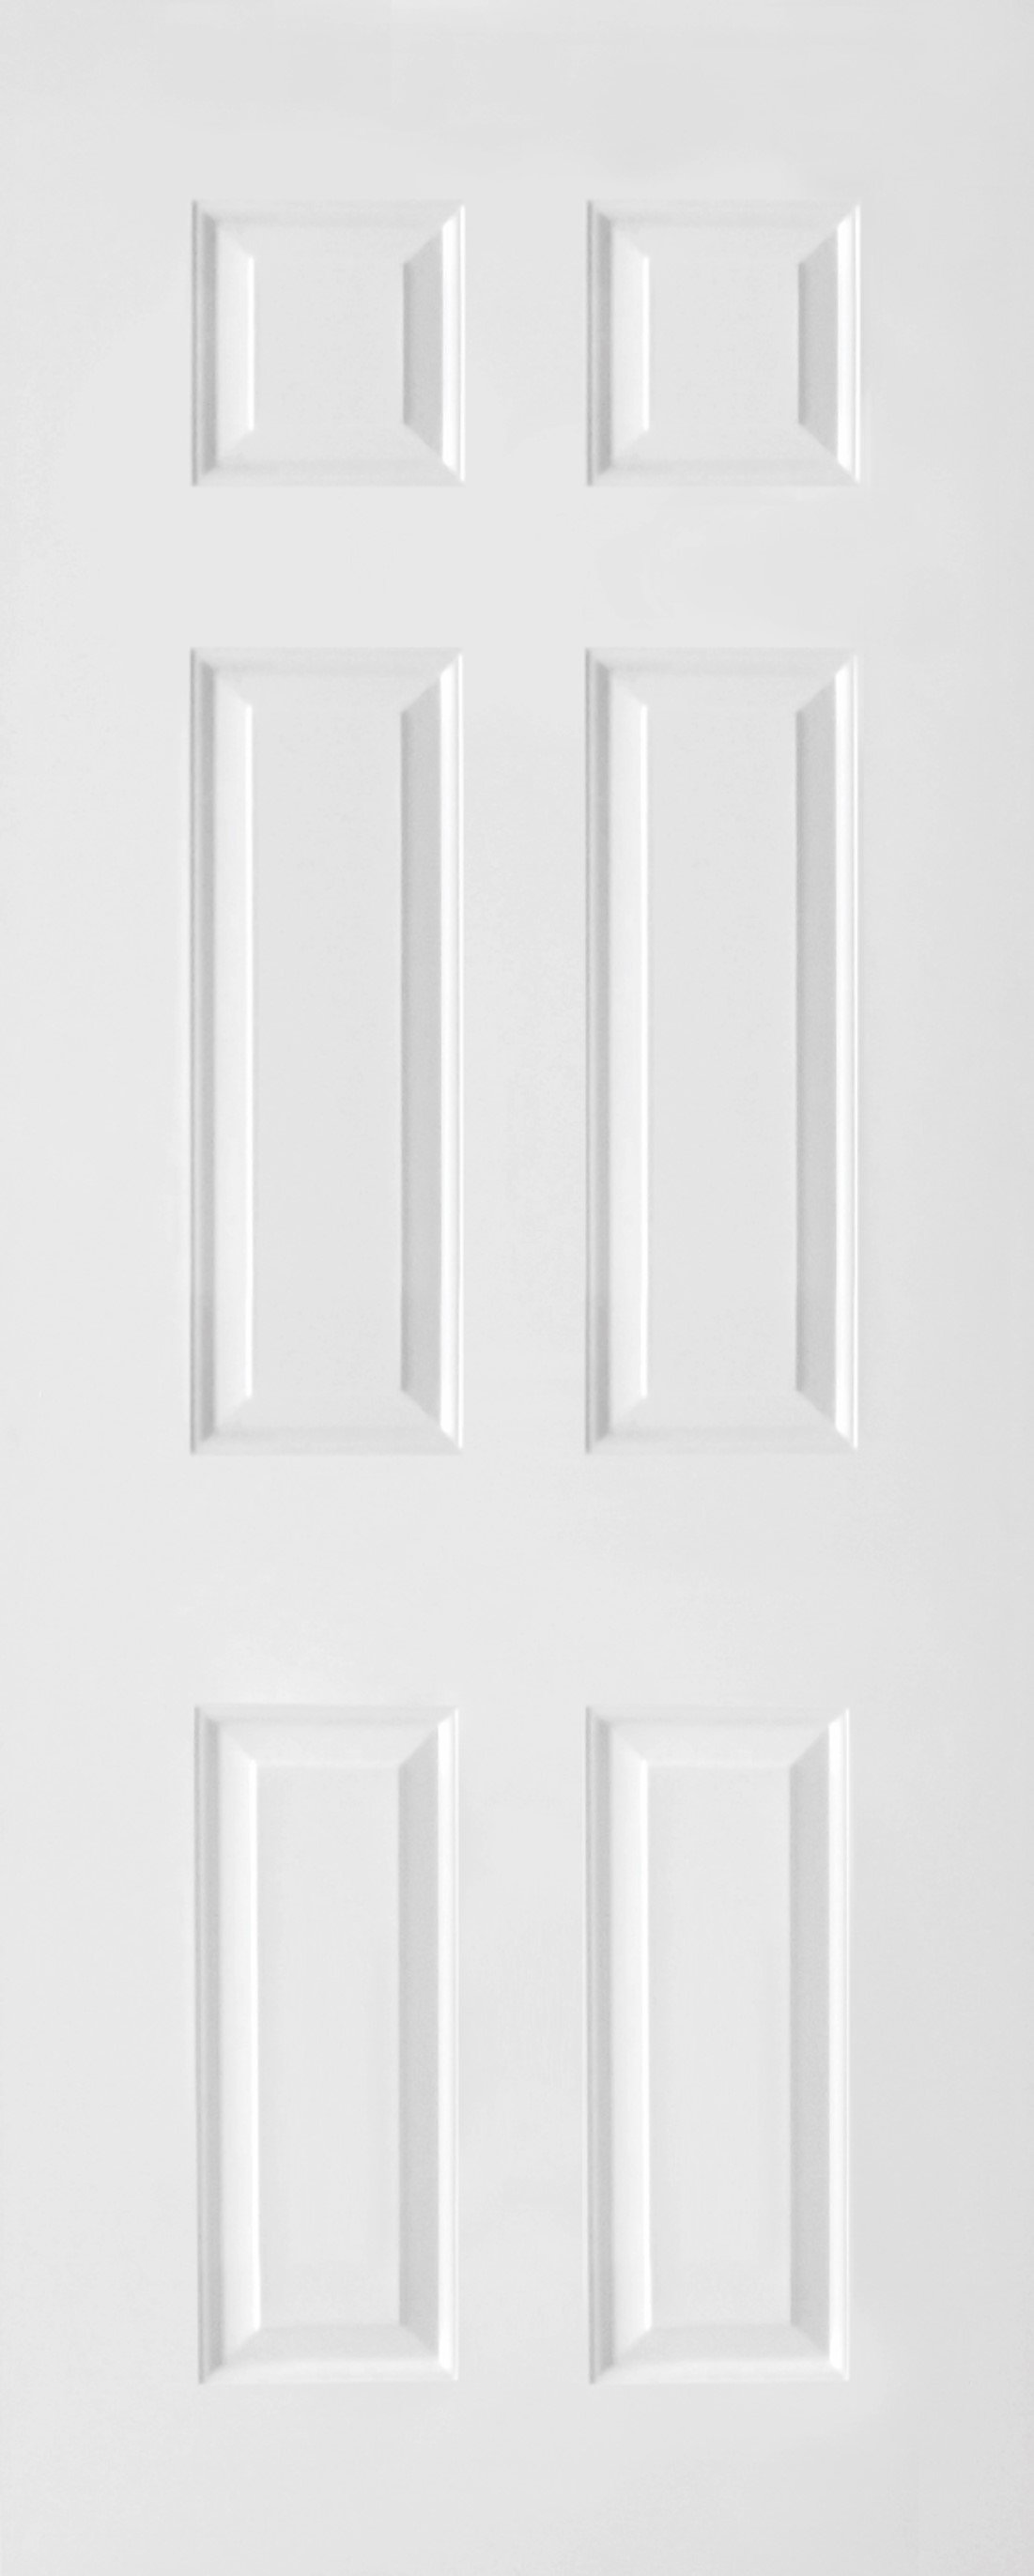 ประตูhdf ลูกฟัก6ช่องตรง(โกสน) ผิวเสี้ยนไม้รองพื้นสีขาว 660฿